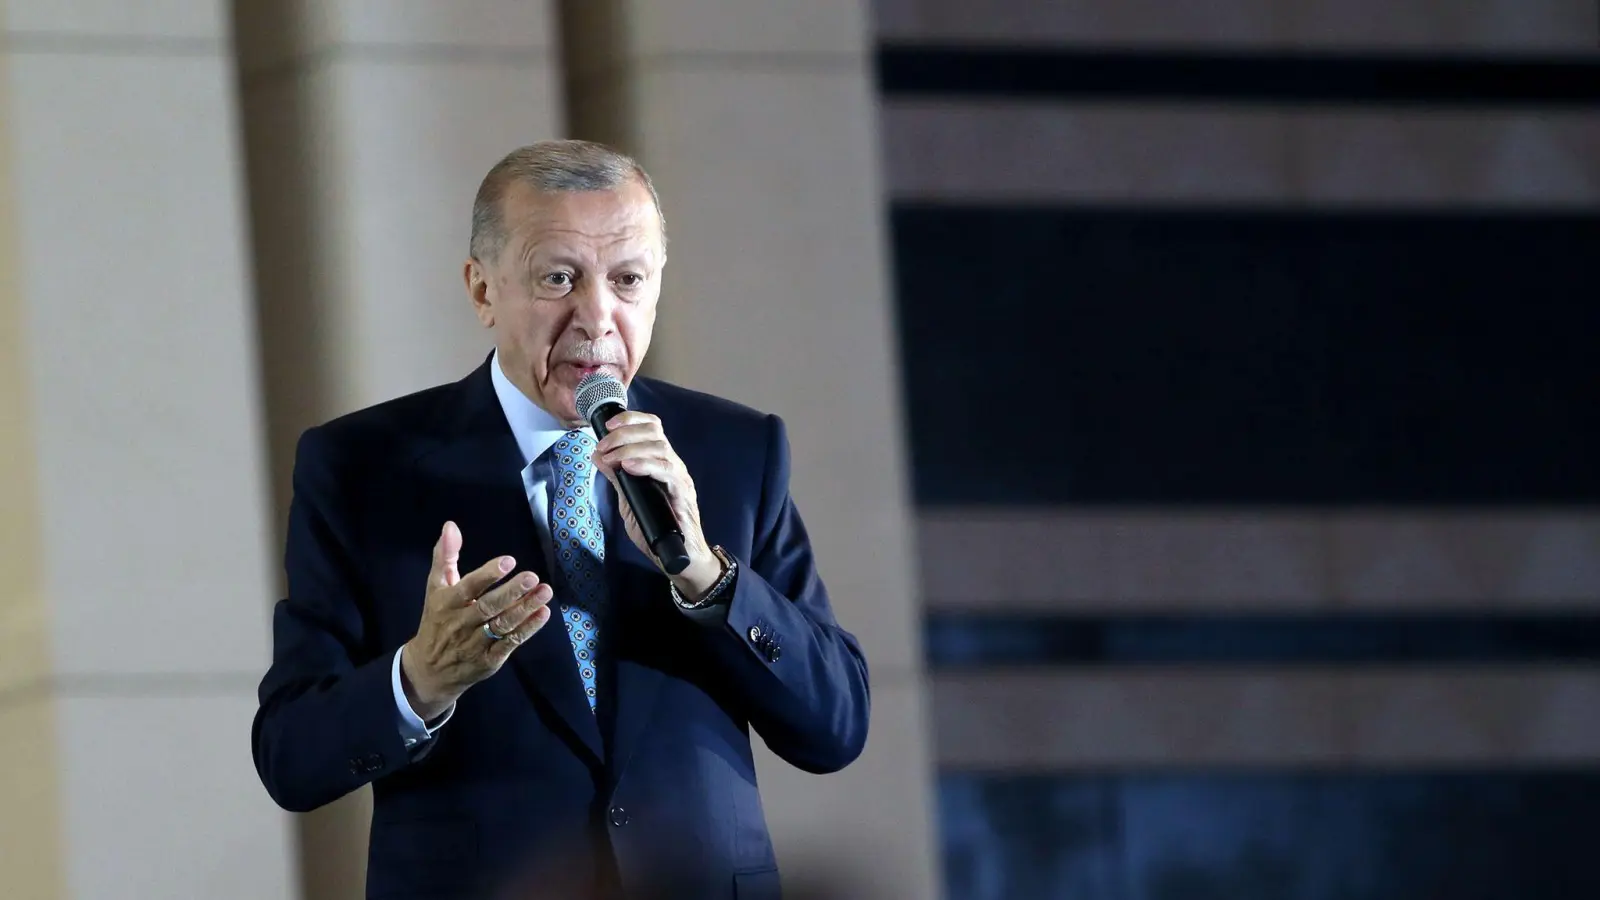 Recep Tayyip Erdogan, Präsident der Türkei und Präsidentschaftskandidat der Volksallianz,  hält eine Rede im Präsidentenpalast in Ankara. (Foto: Mustafa Kaya/Handout/XinHua/dpa)